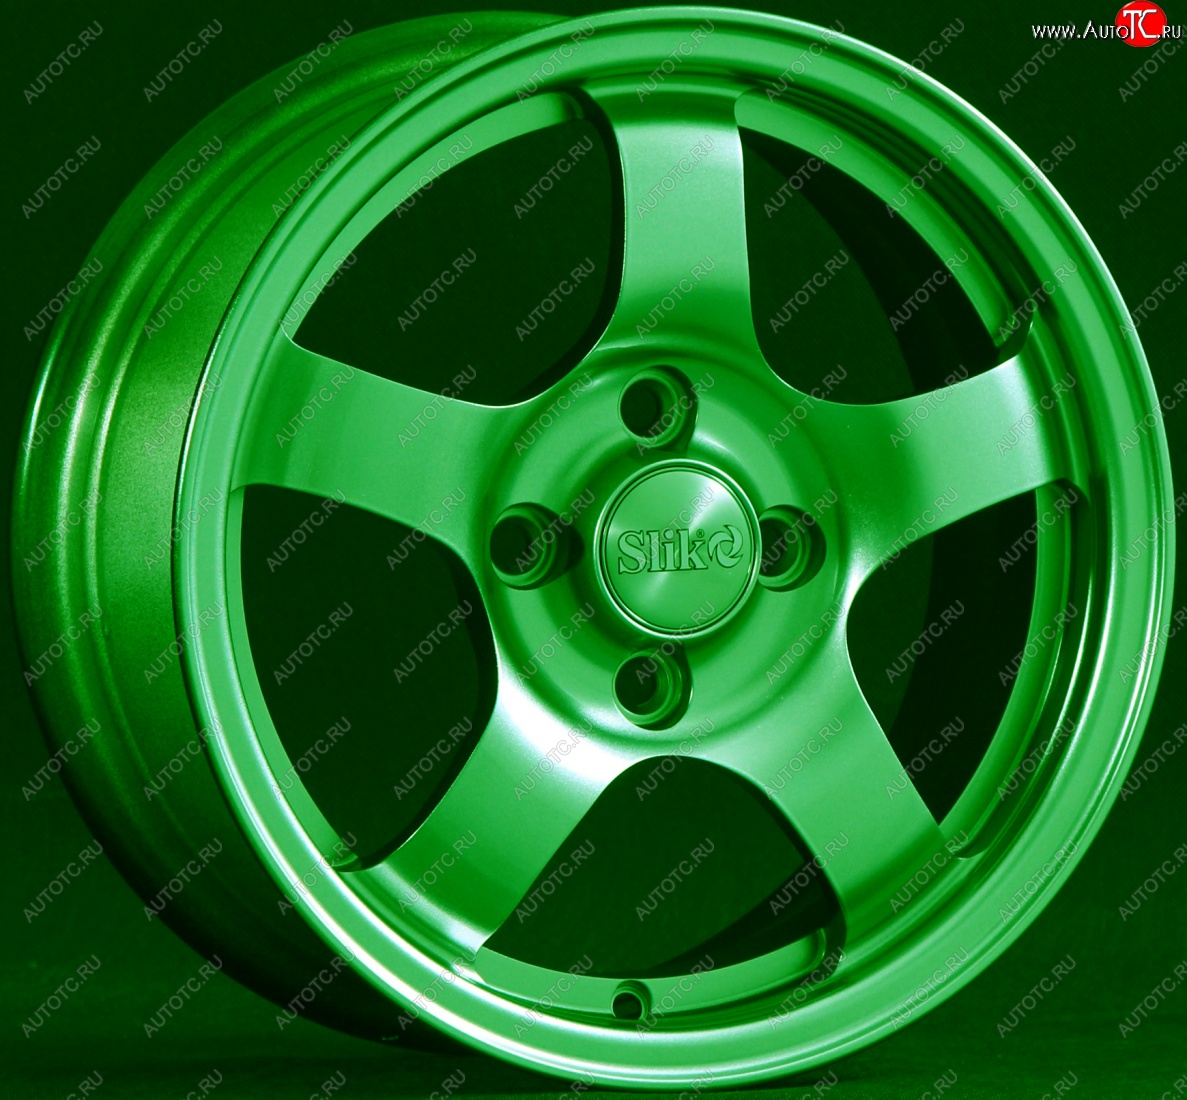 12 799 р. Кованый диск Slik Classik 6x14 (Зелёный GREEN) Уаз Патриот 3163 5-дв. 1-ый рестайлинг (2014-2016) 5x139.7xDIA108.1xET35.0 (Цвет: Зелёный GREEN)